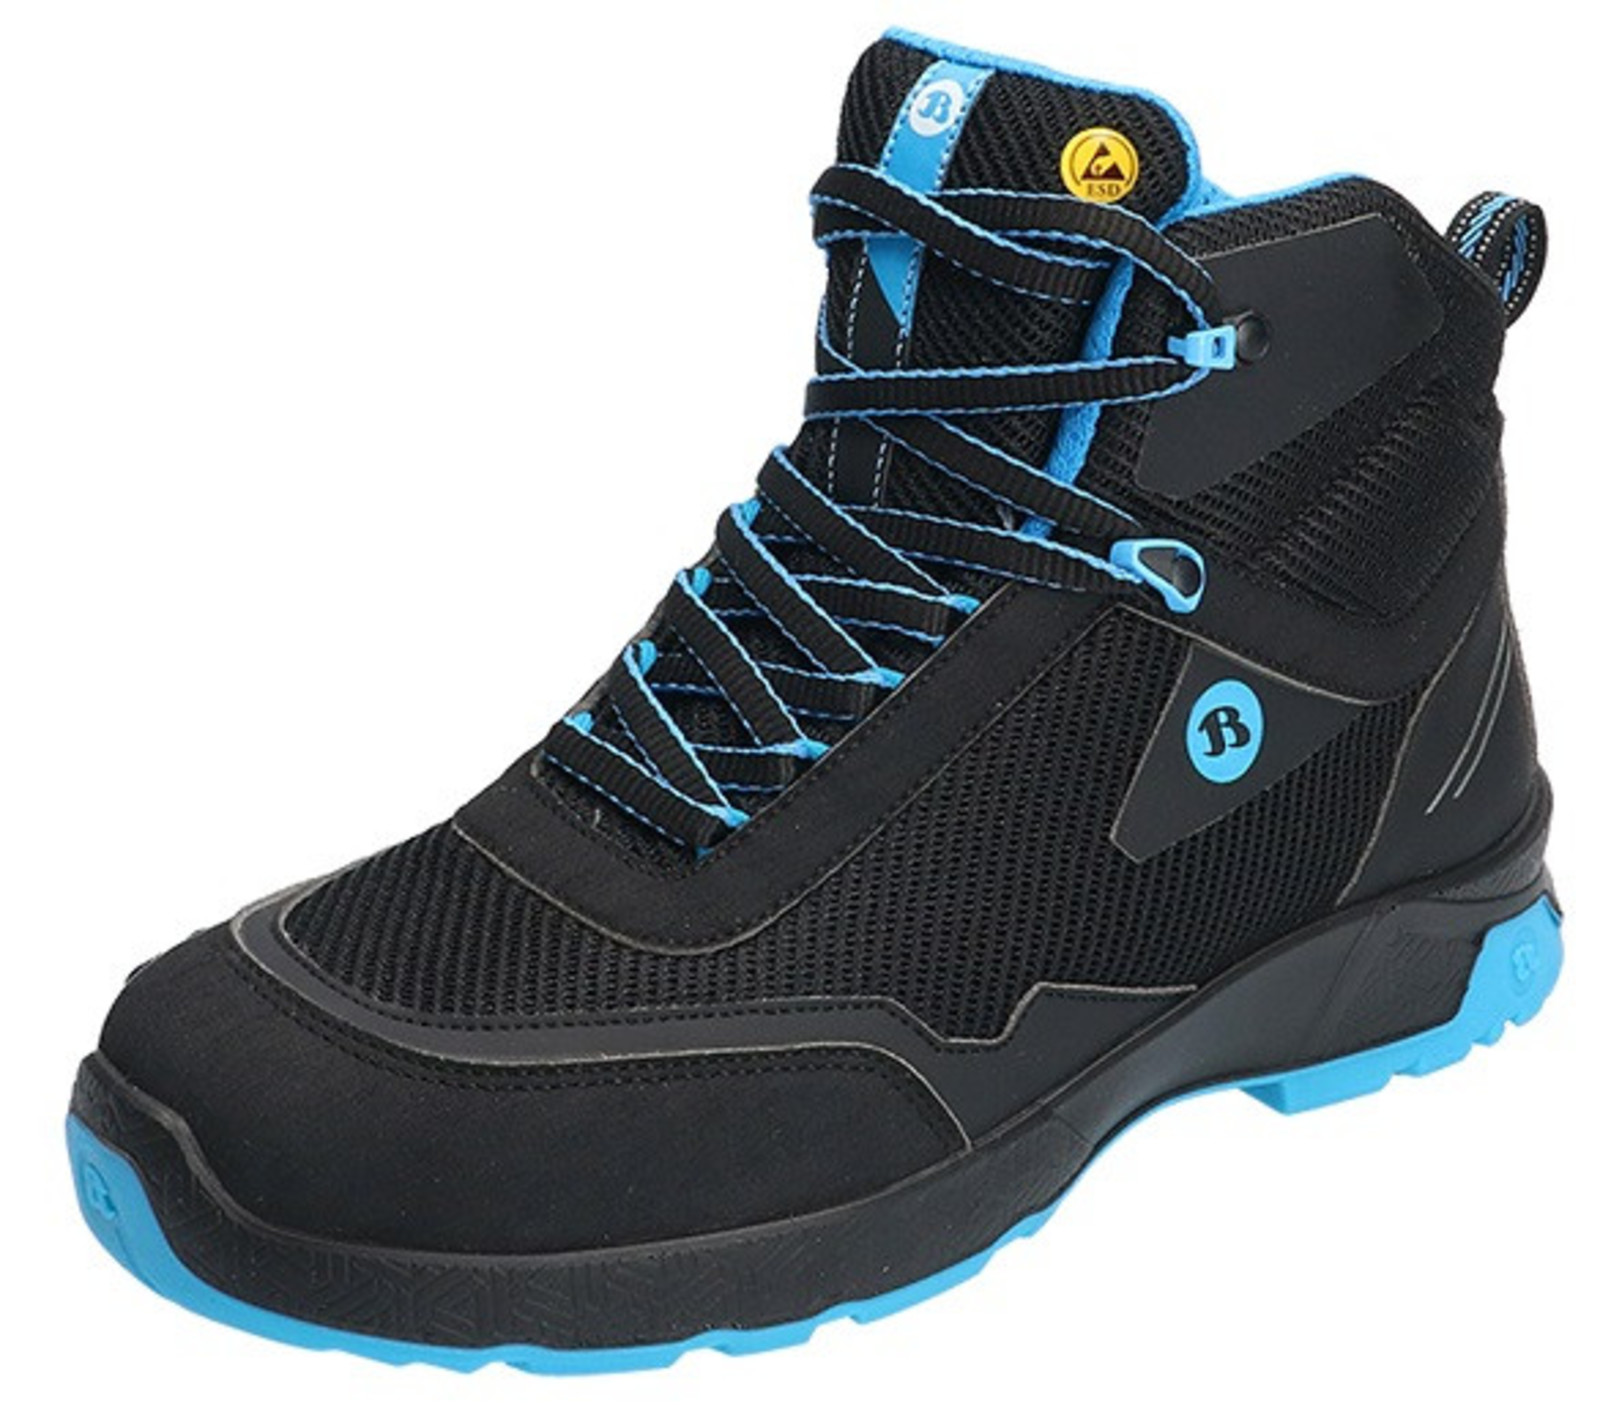 Bezpečnostná členková obuv Baťa Summ One S3 ESD - veľkosť: 42, farba: čierna